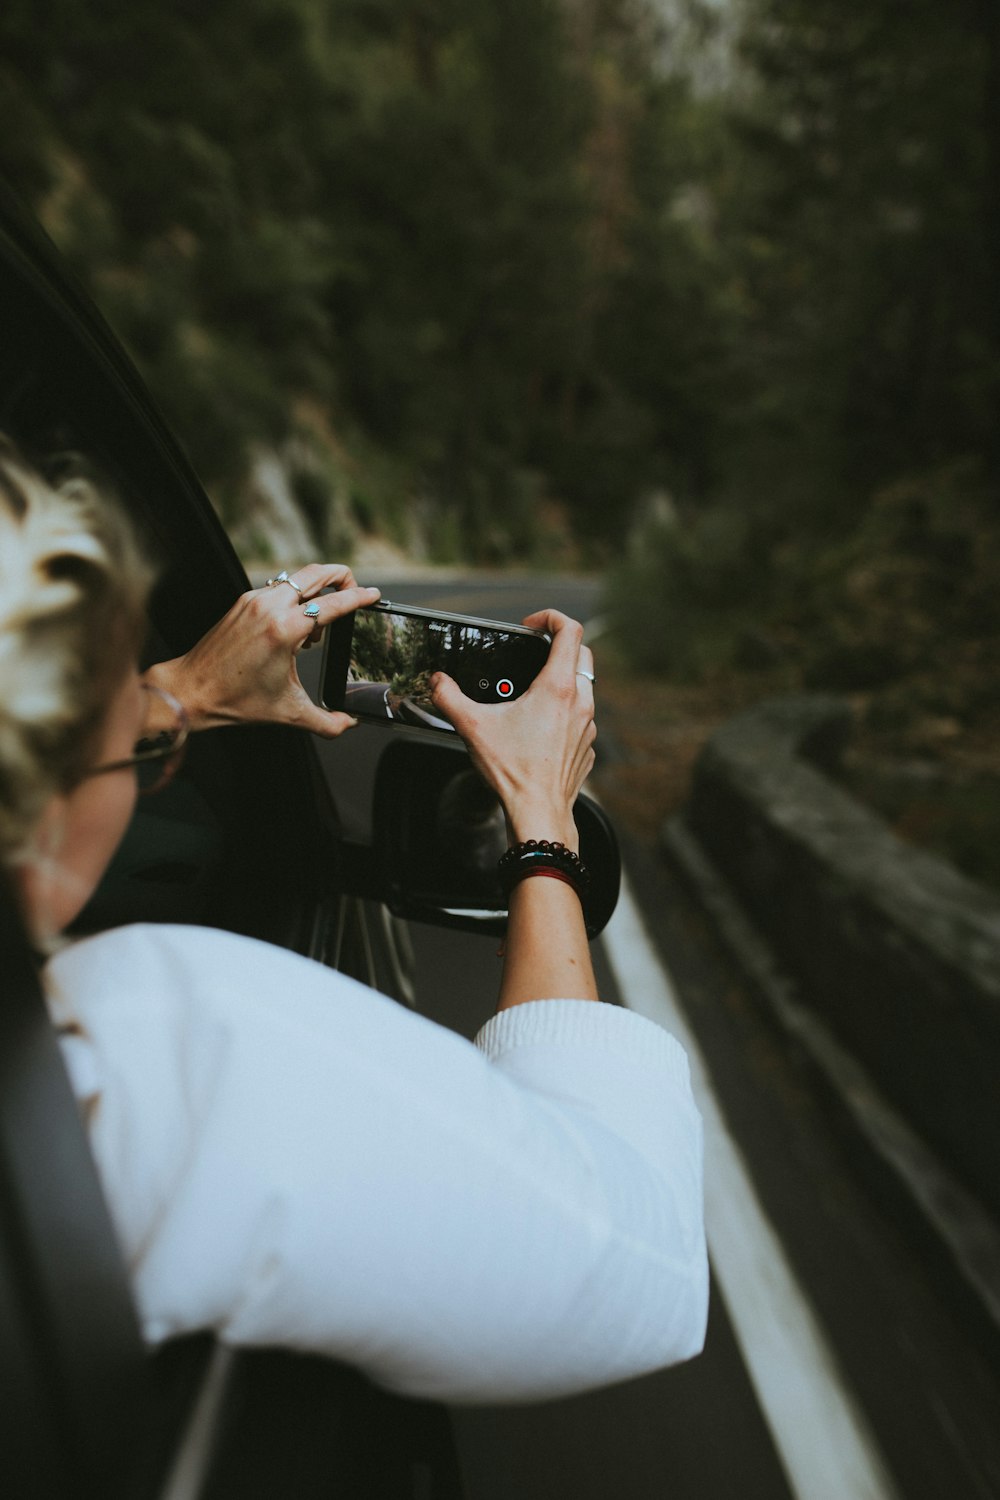 스마트폰을 들고 차에 타고 있는 여성이 사진을 찍고 있다